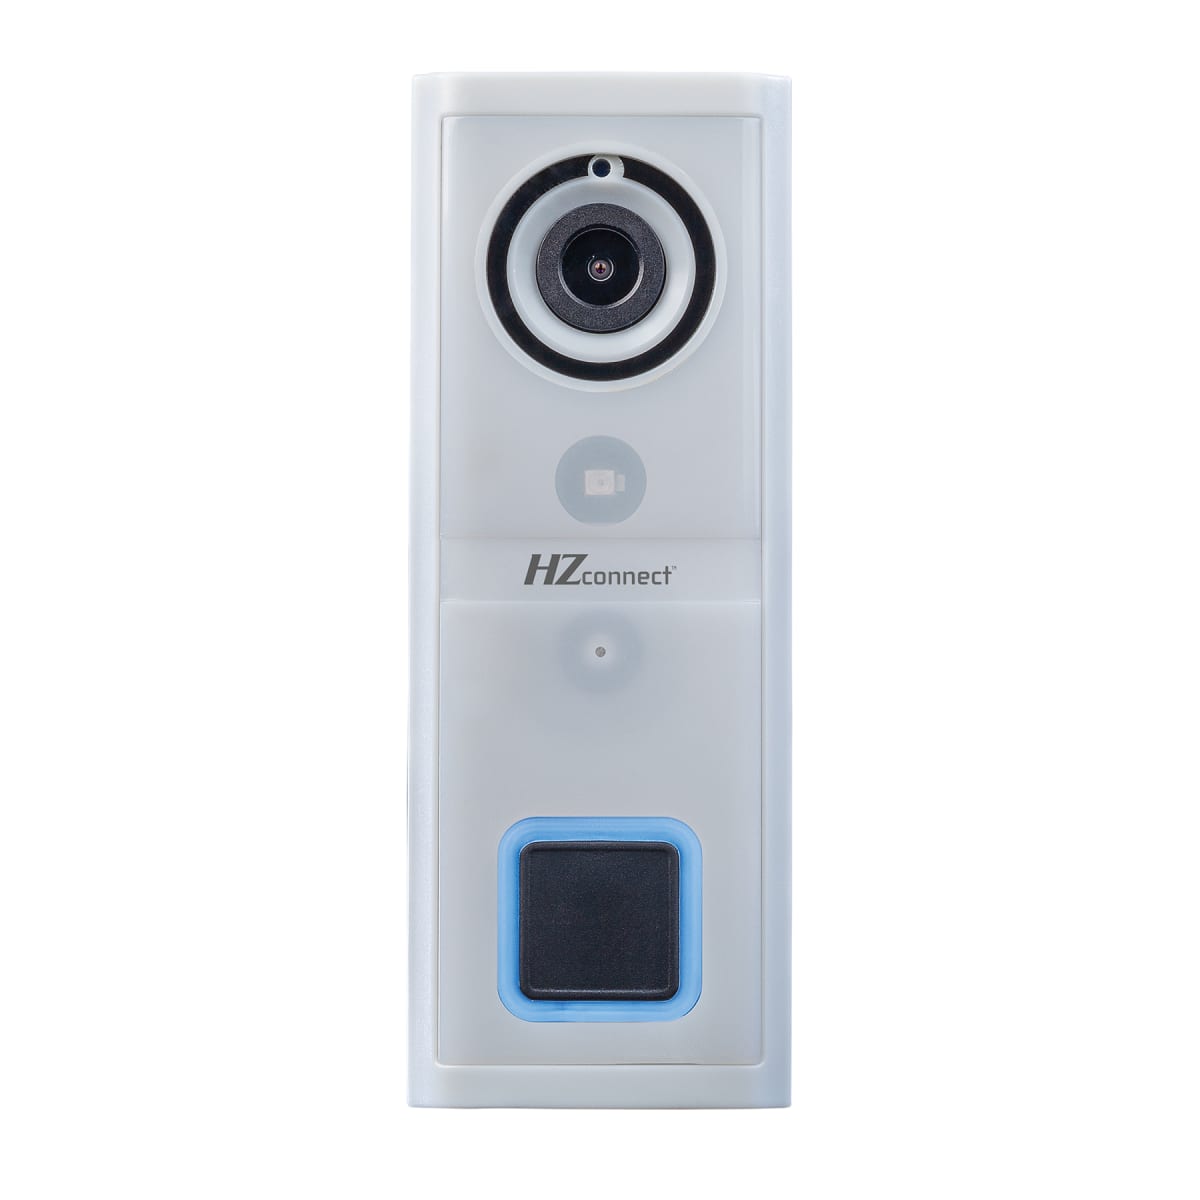 Heath Zenith SL-9601-00 HZ Connect Wired HD Video Doorbell